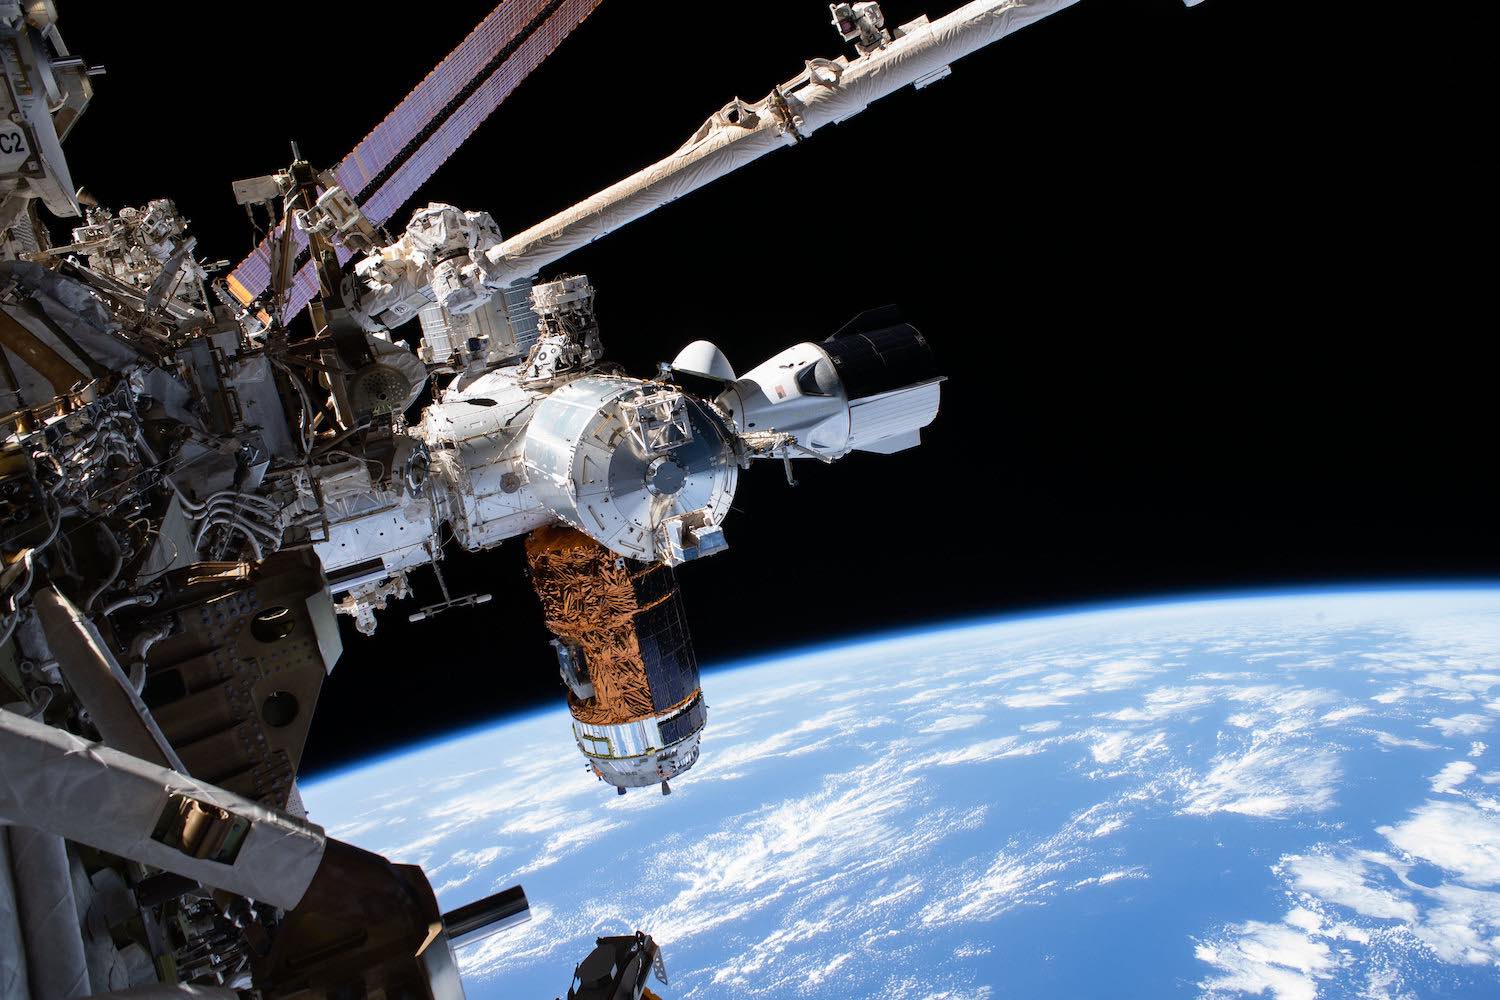 NASA confirms plans for Crew Dragon splashdown Aug. 2, weather permitting – Spaceflight Now